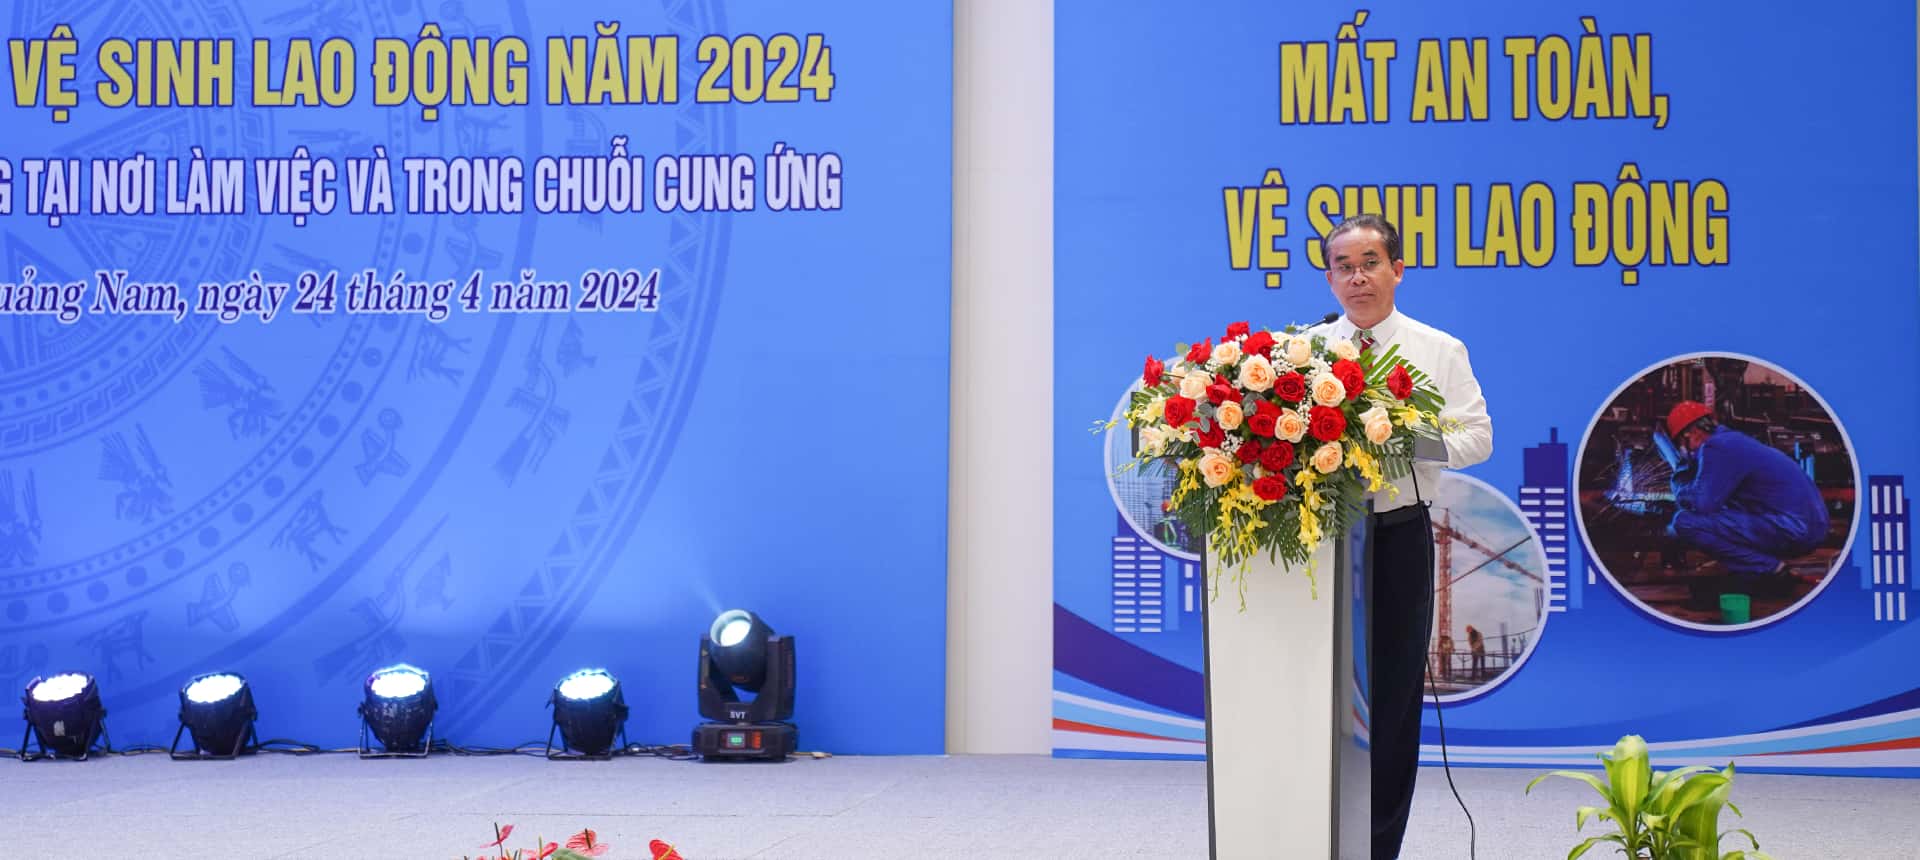 Ông Trần Anh Tuấn - Phó Chủ tịch UBND tỉnh Quảng Nam phát biểu tại buổi lễ